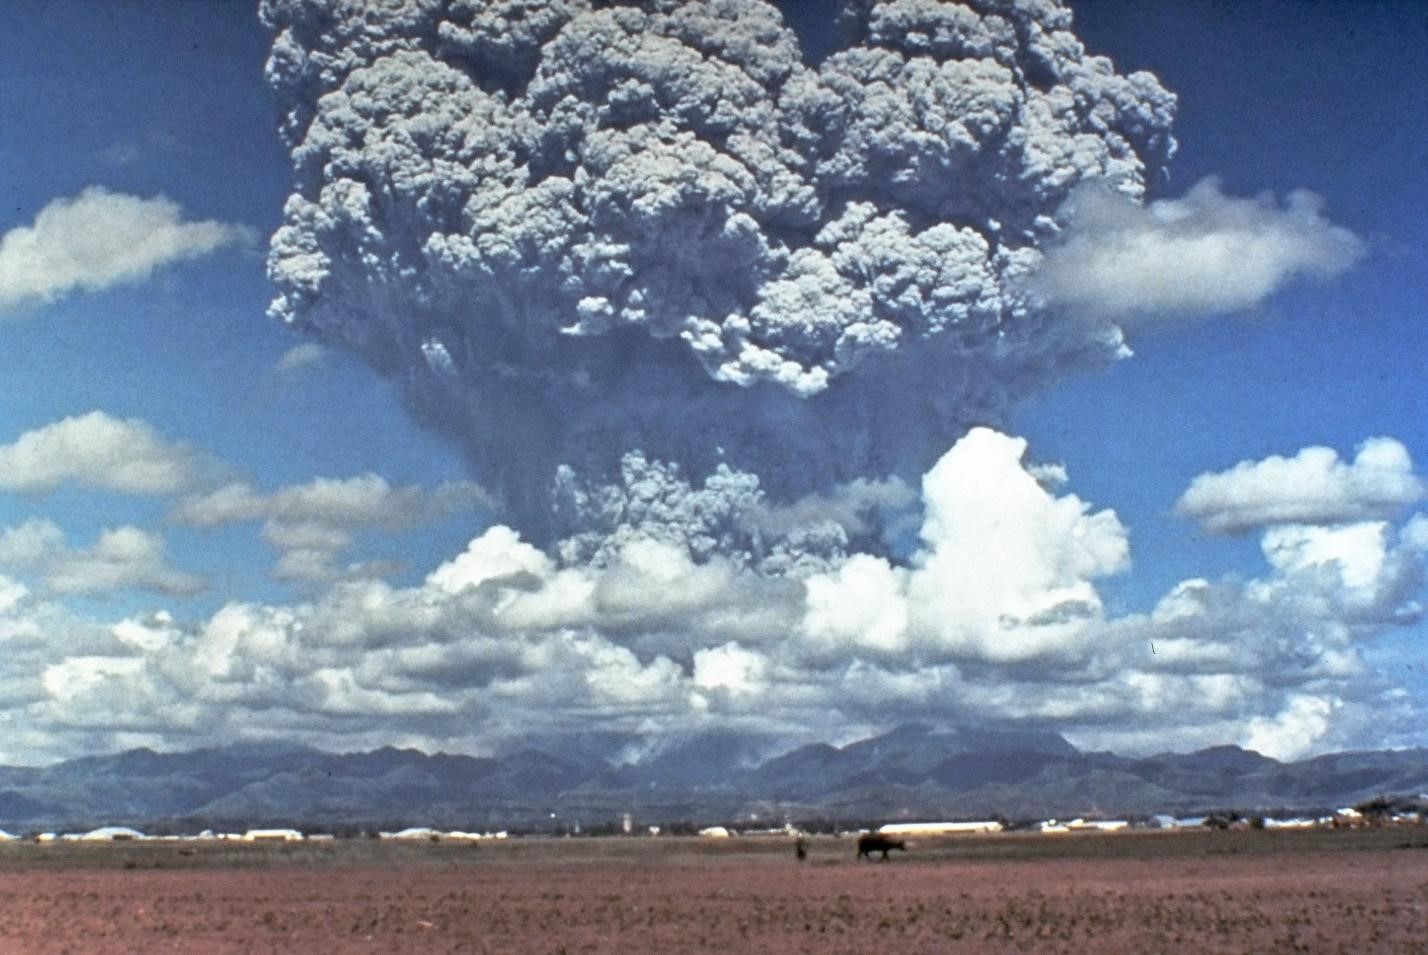 مختصر مفيد: هل كاد البشر ان ينقرضوا بسبب بركان؟